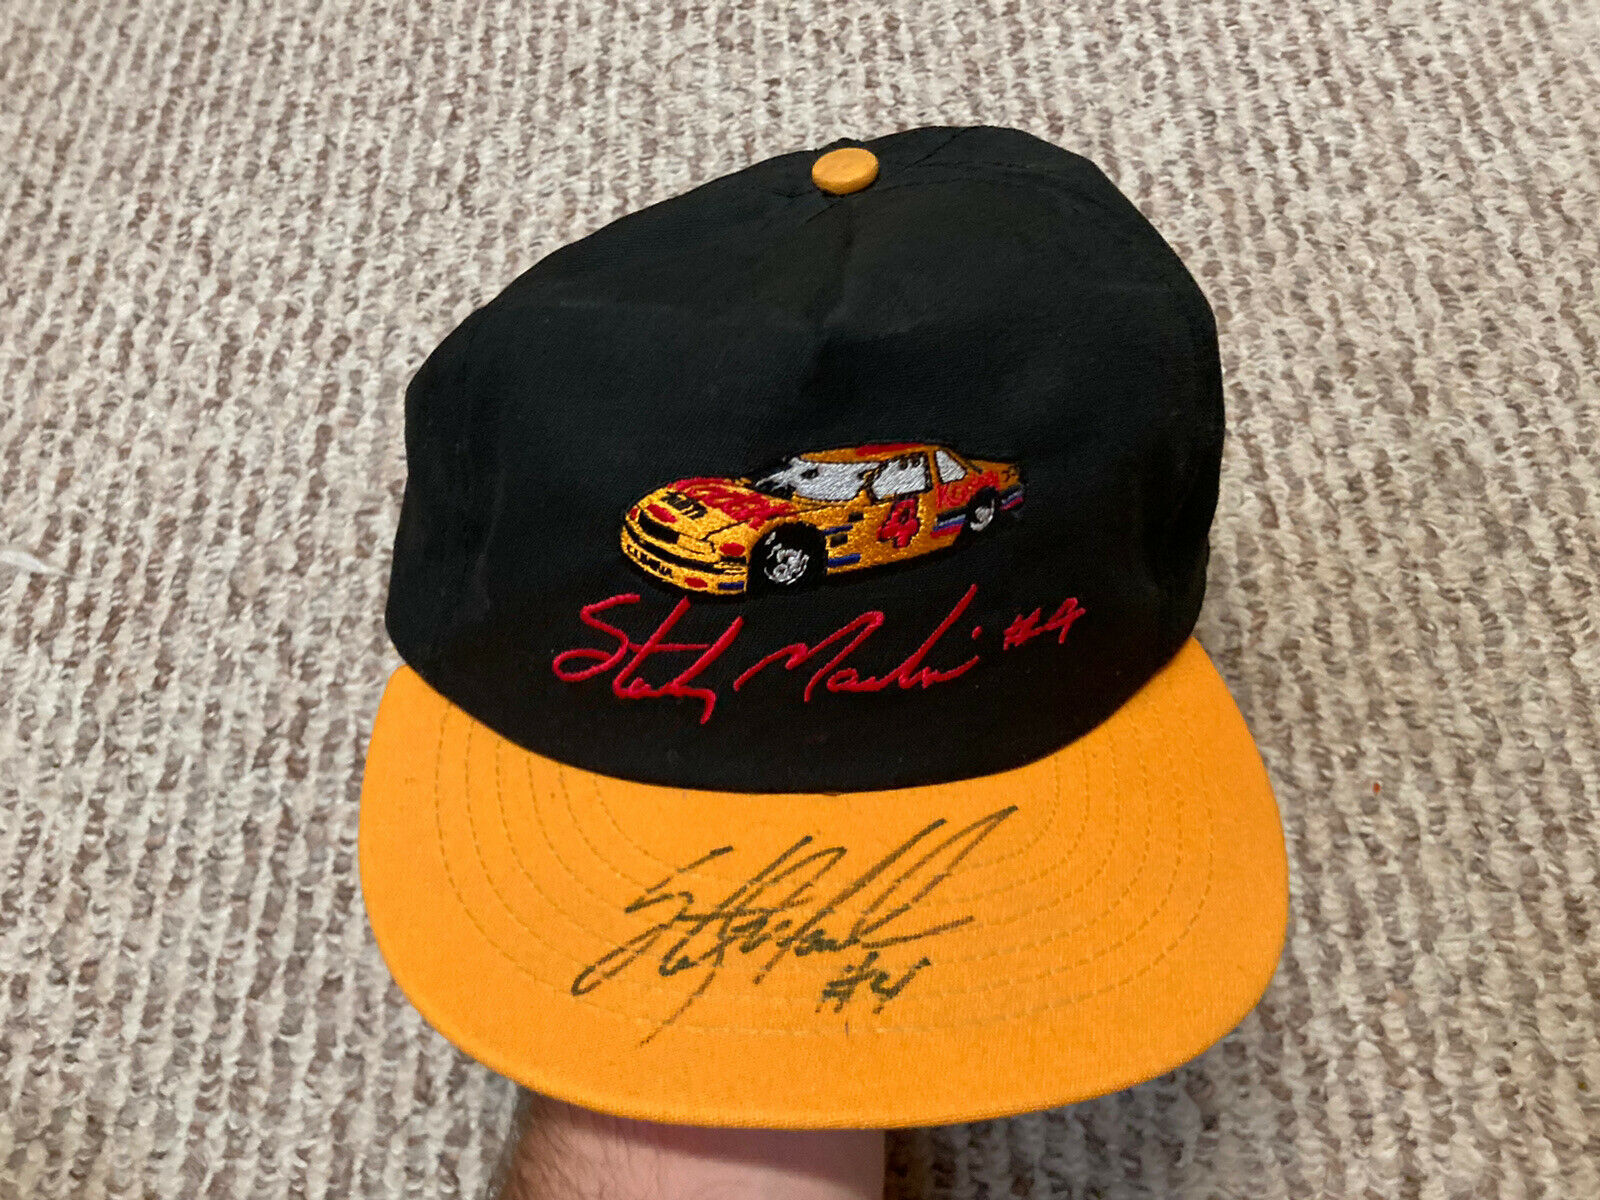 Sterling Marlin Signed Autographed Hat #4 Nascar Kodak Racing Race Car Vintage